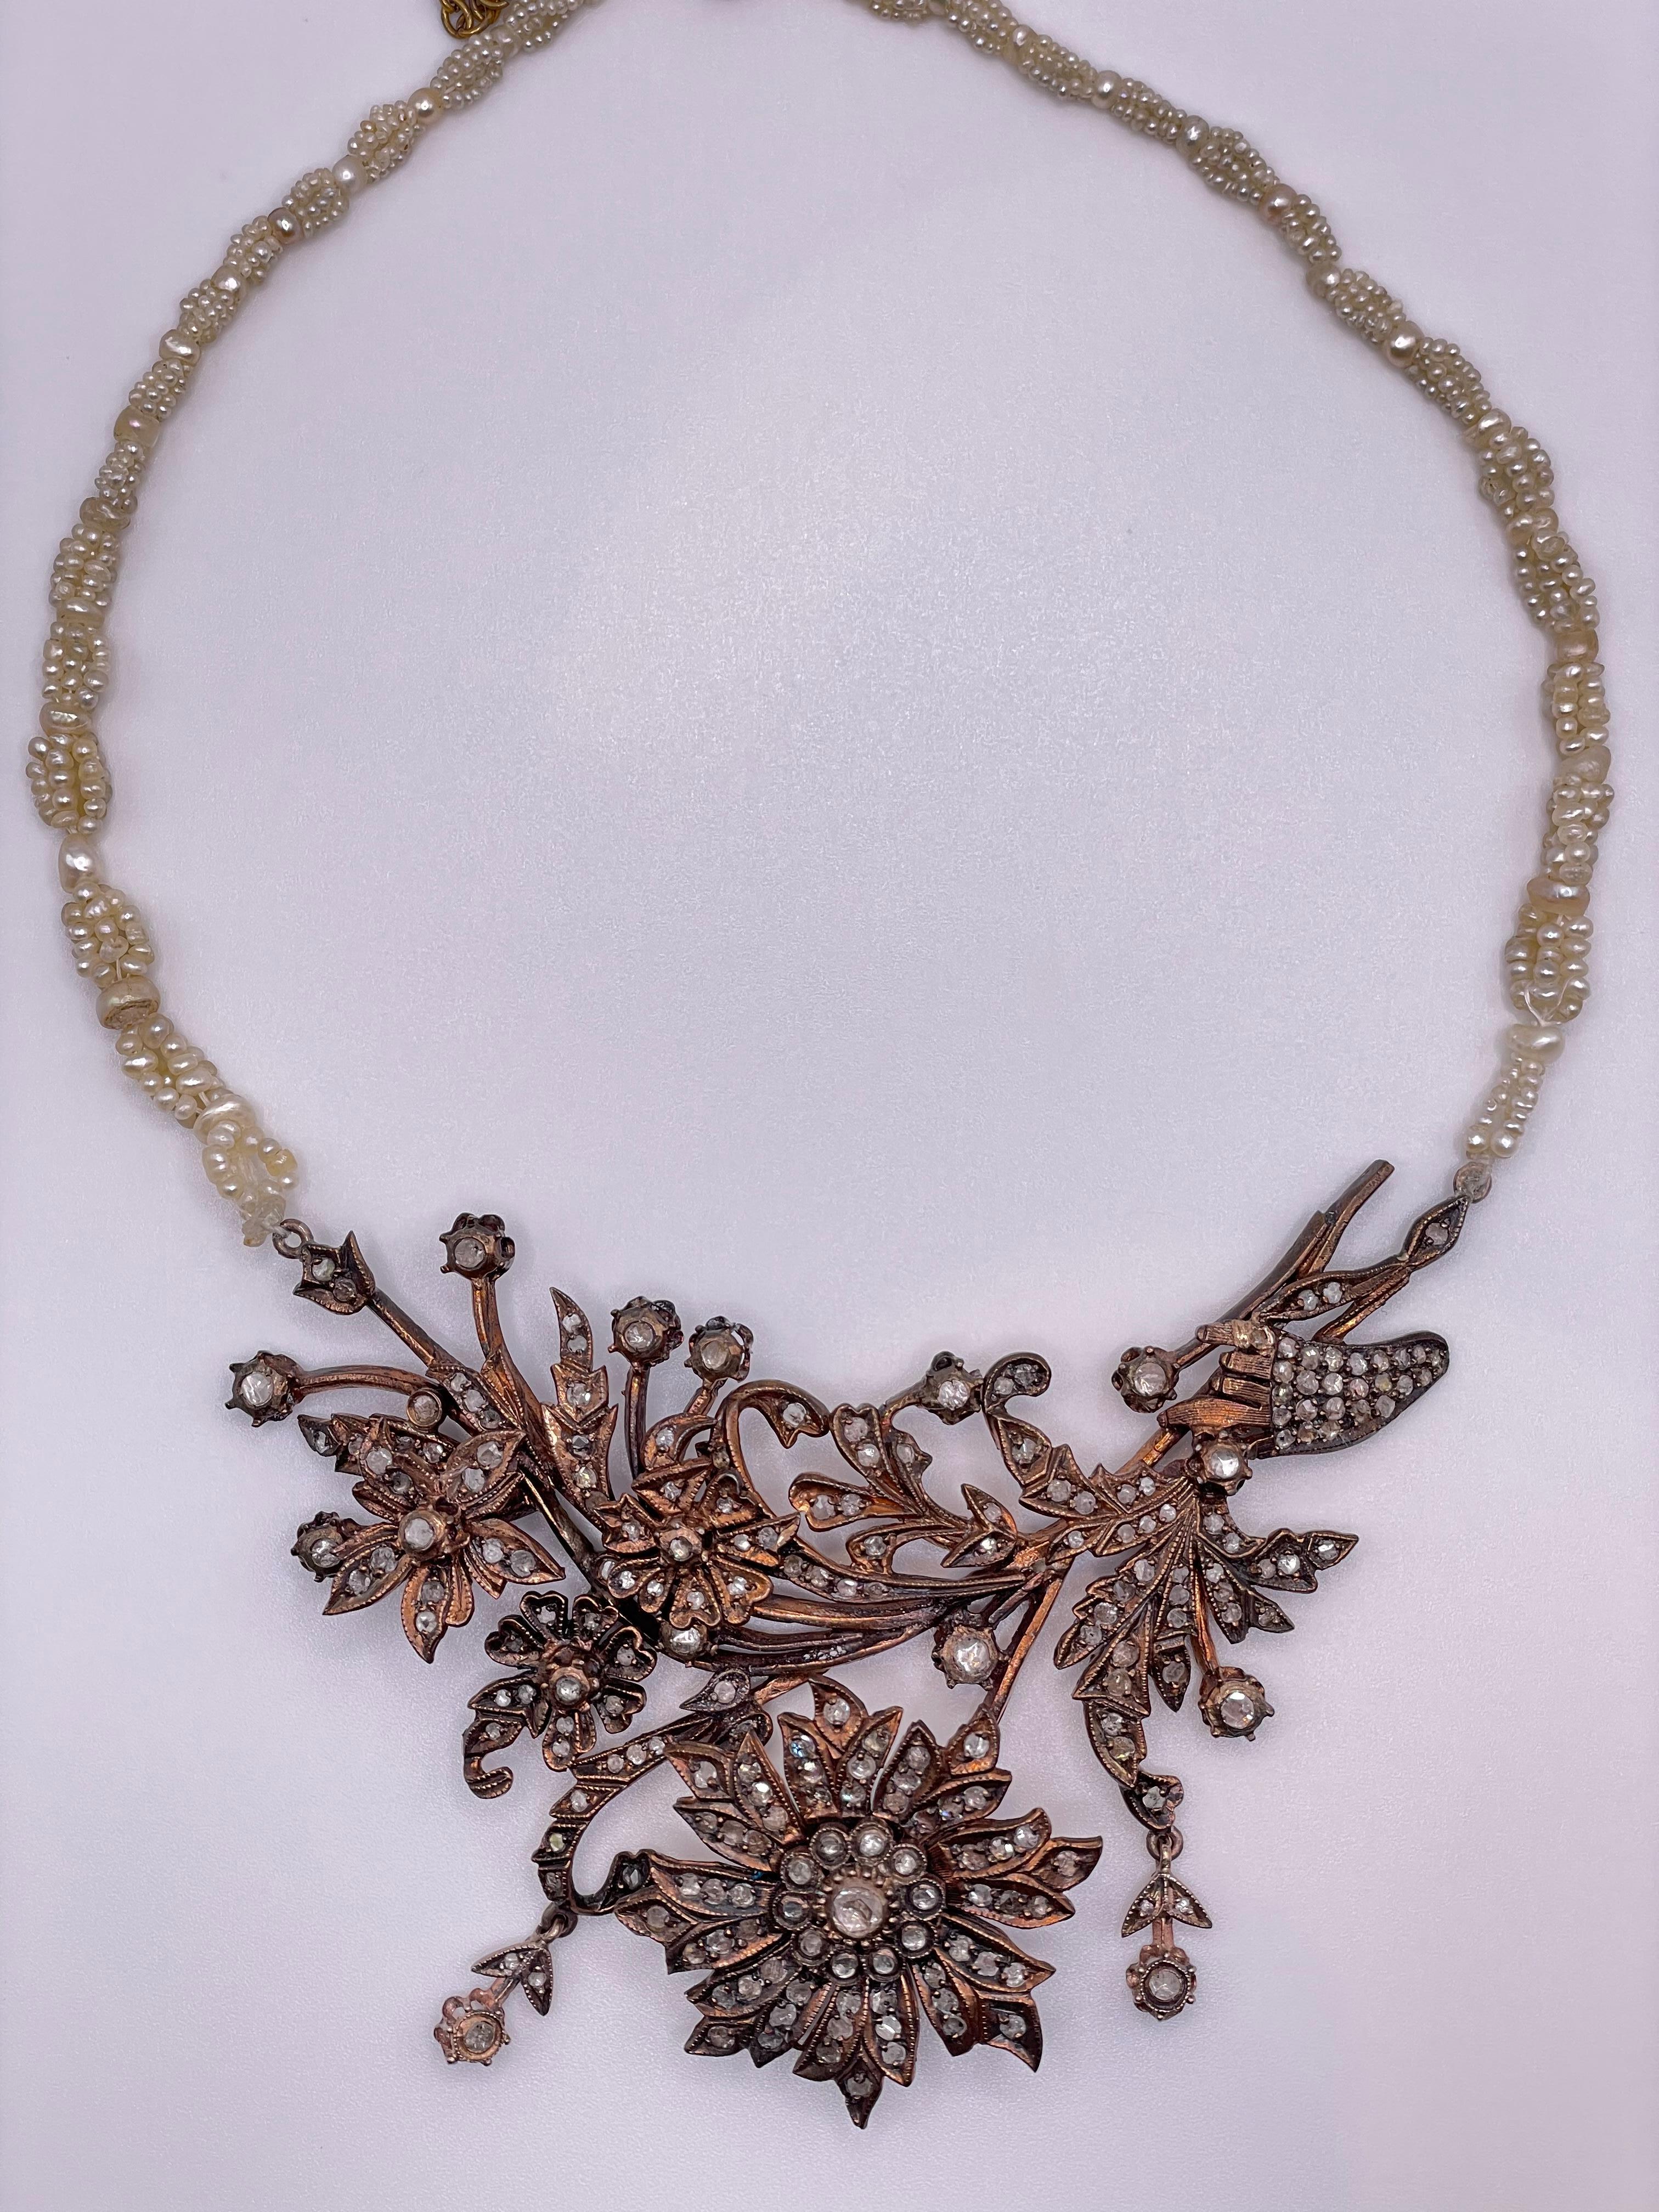 Wunderschöne frühviktorianische Halskette aus der Zeit um 1860, gearbeitet in 14k Gold, besetzt mit 197 Diamanten im Rosenschliff mit einem Gesamtgewicht von ca. 2,70ct  . Dieses einzigartige Stück ist mit 3 Reihen wunderschöner Bahrain-Perlen